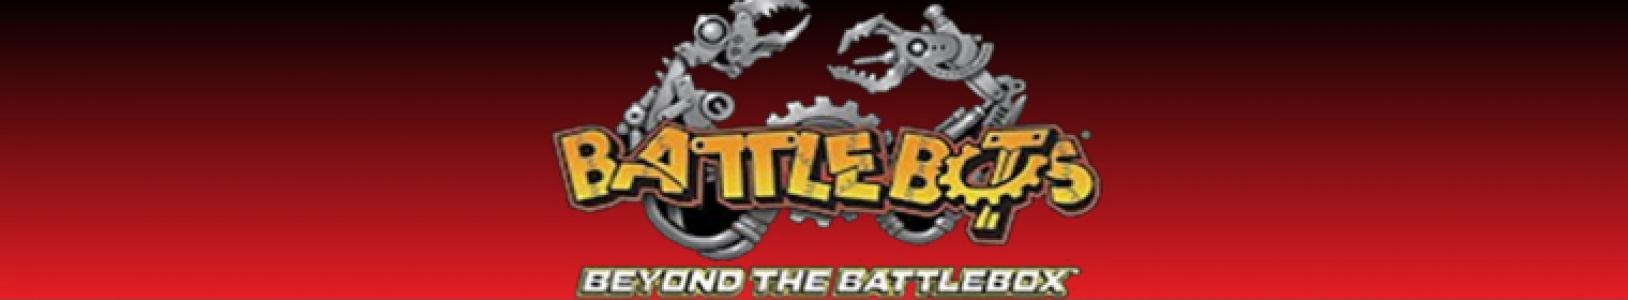 BattleBots: Beyond the BattleBox banner